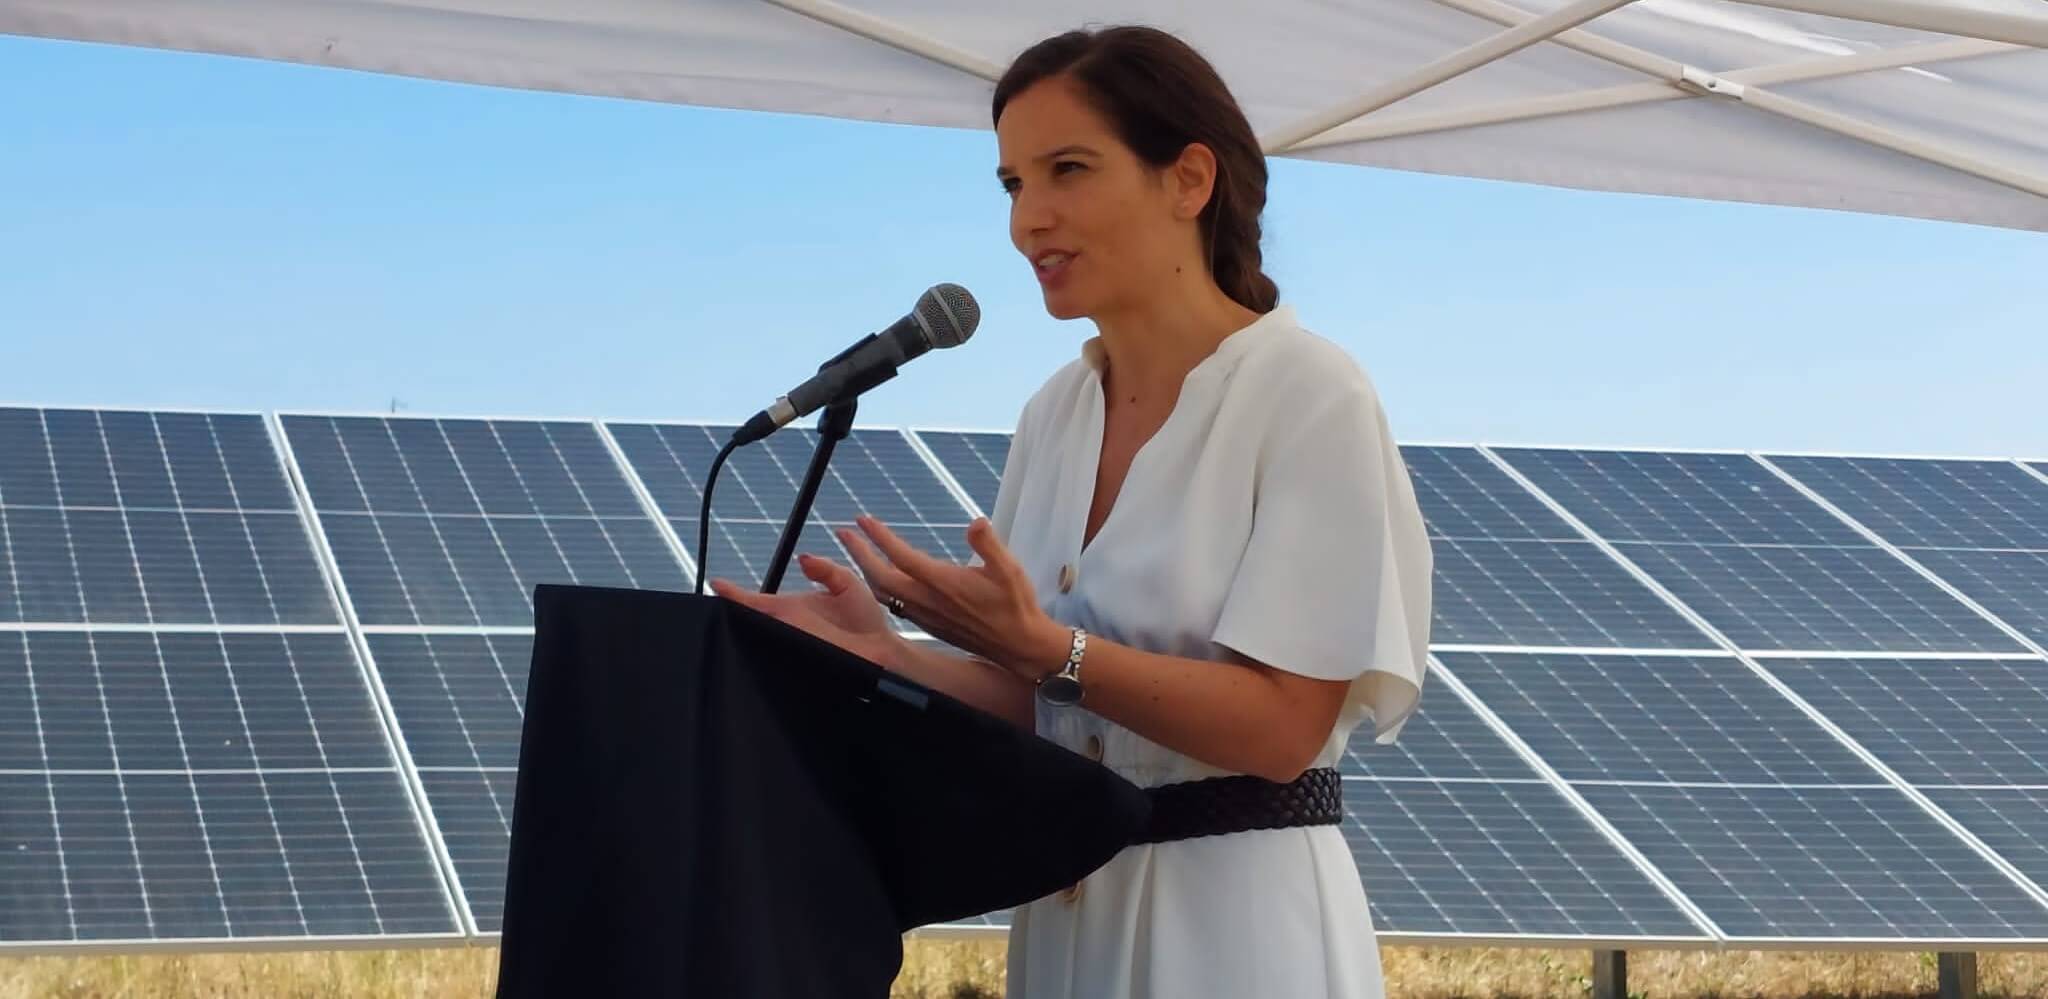 Solaria inaugurates its photovoltaic plant in Casais da Marmeleira in Portugal